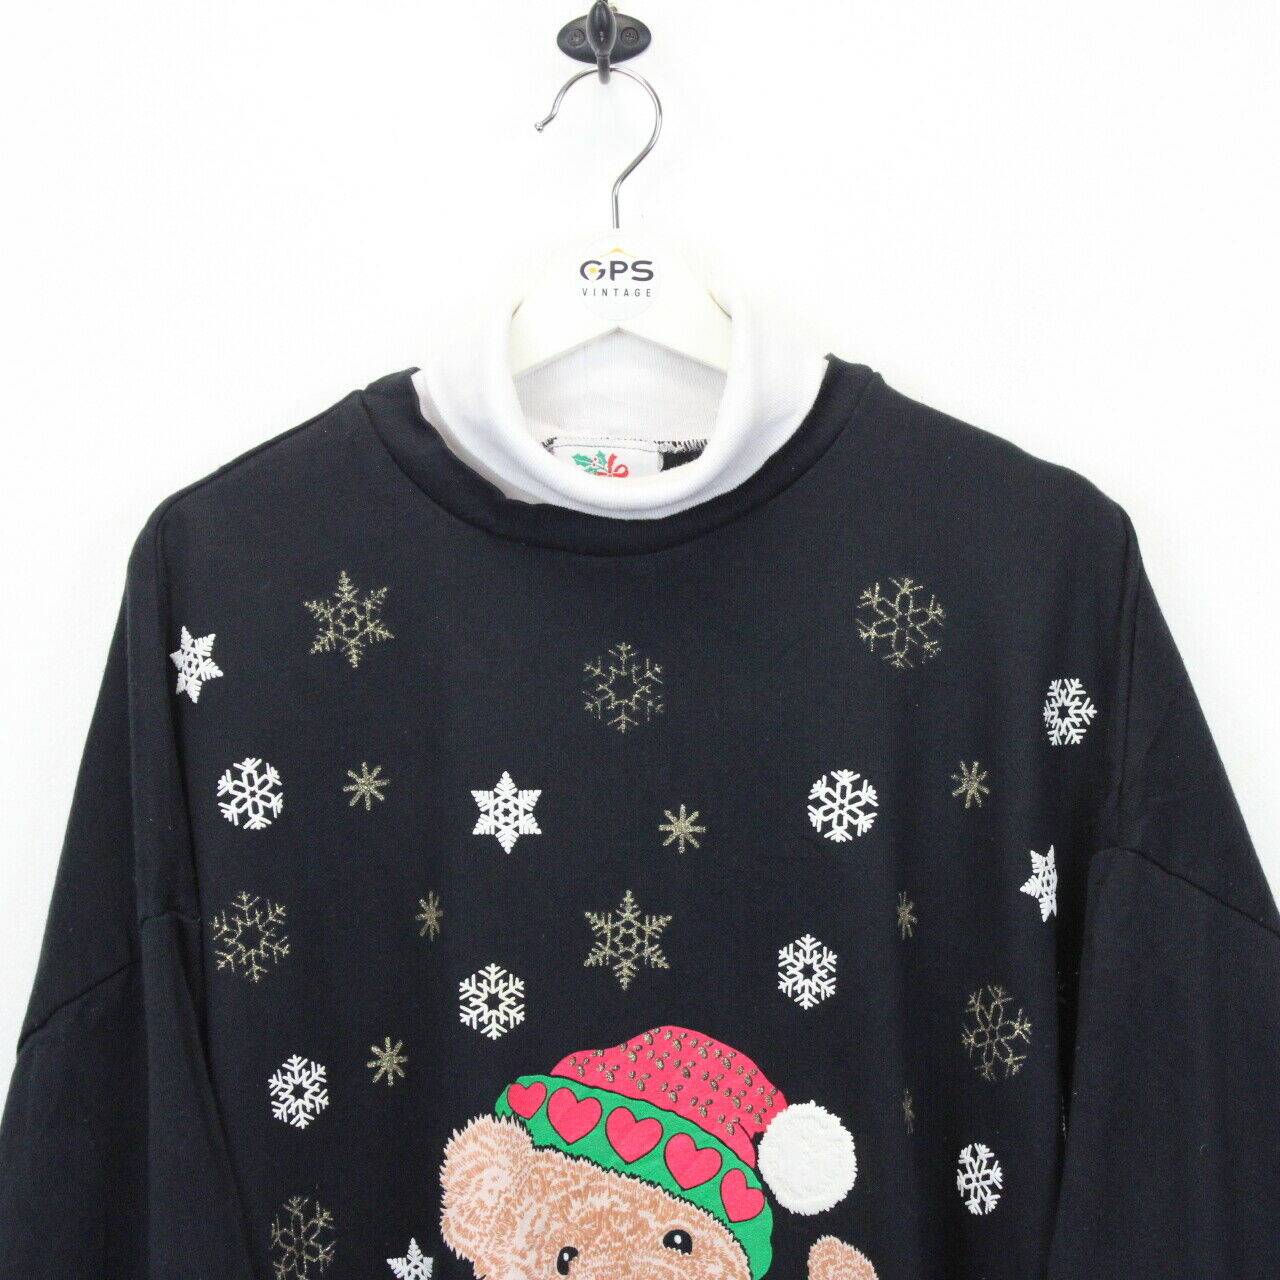 Womens 90s Christmas Sweatshirt Black | XL